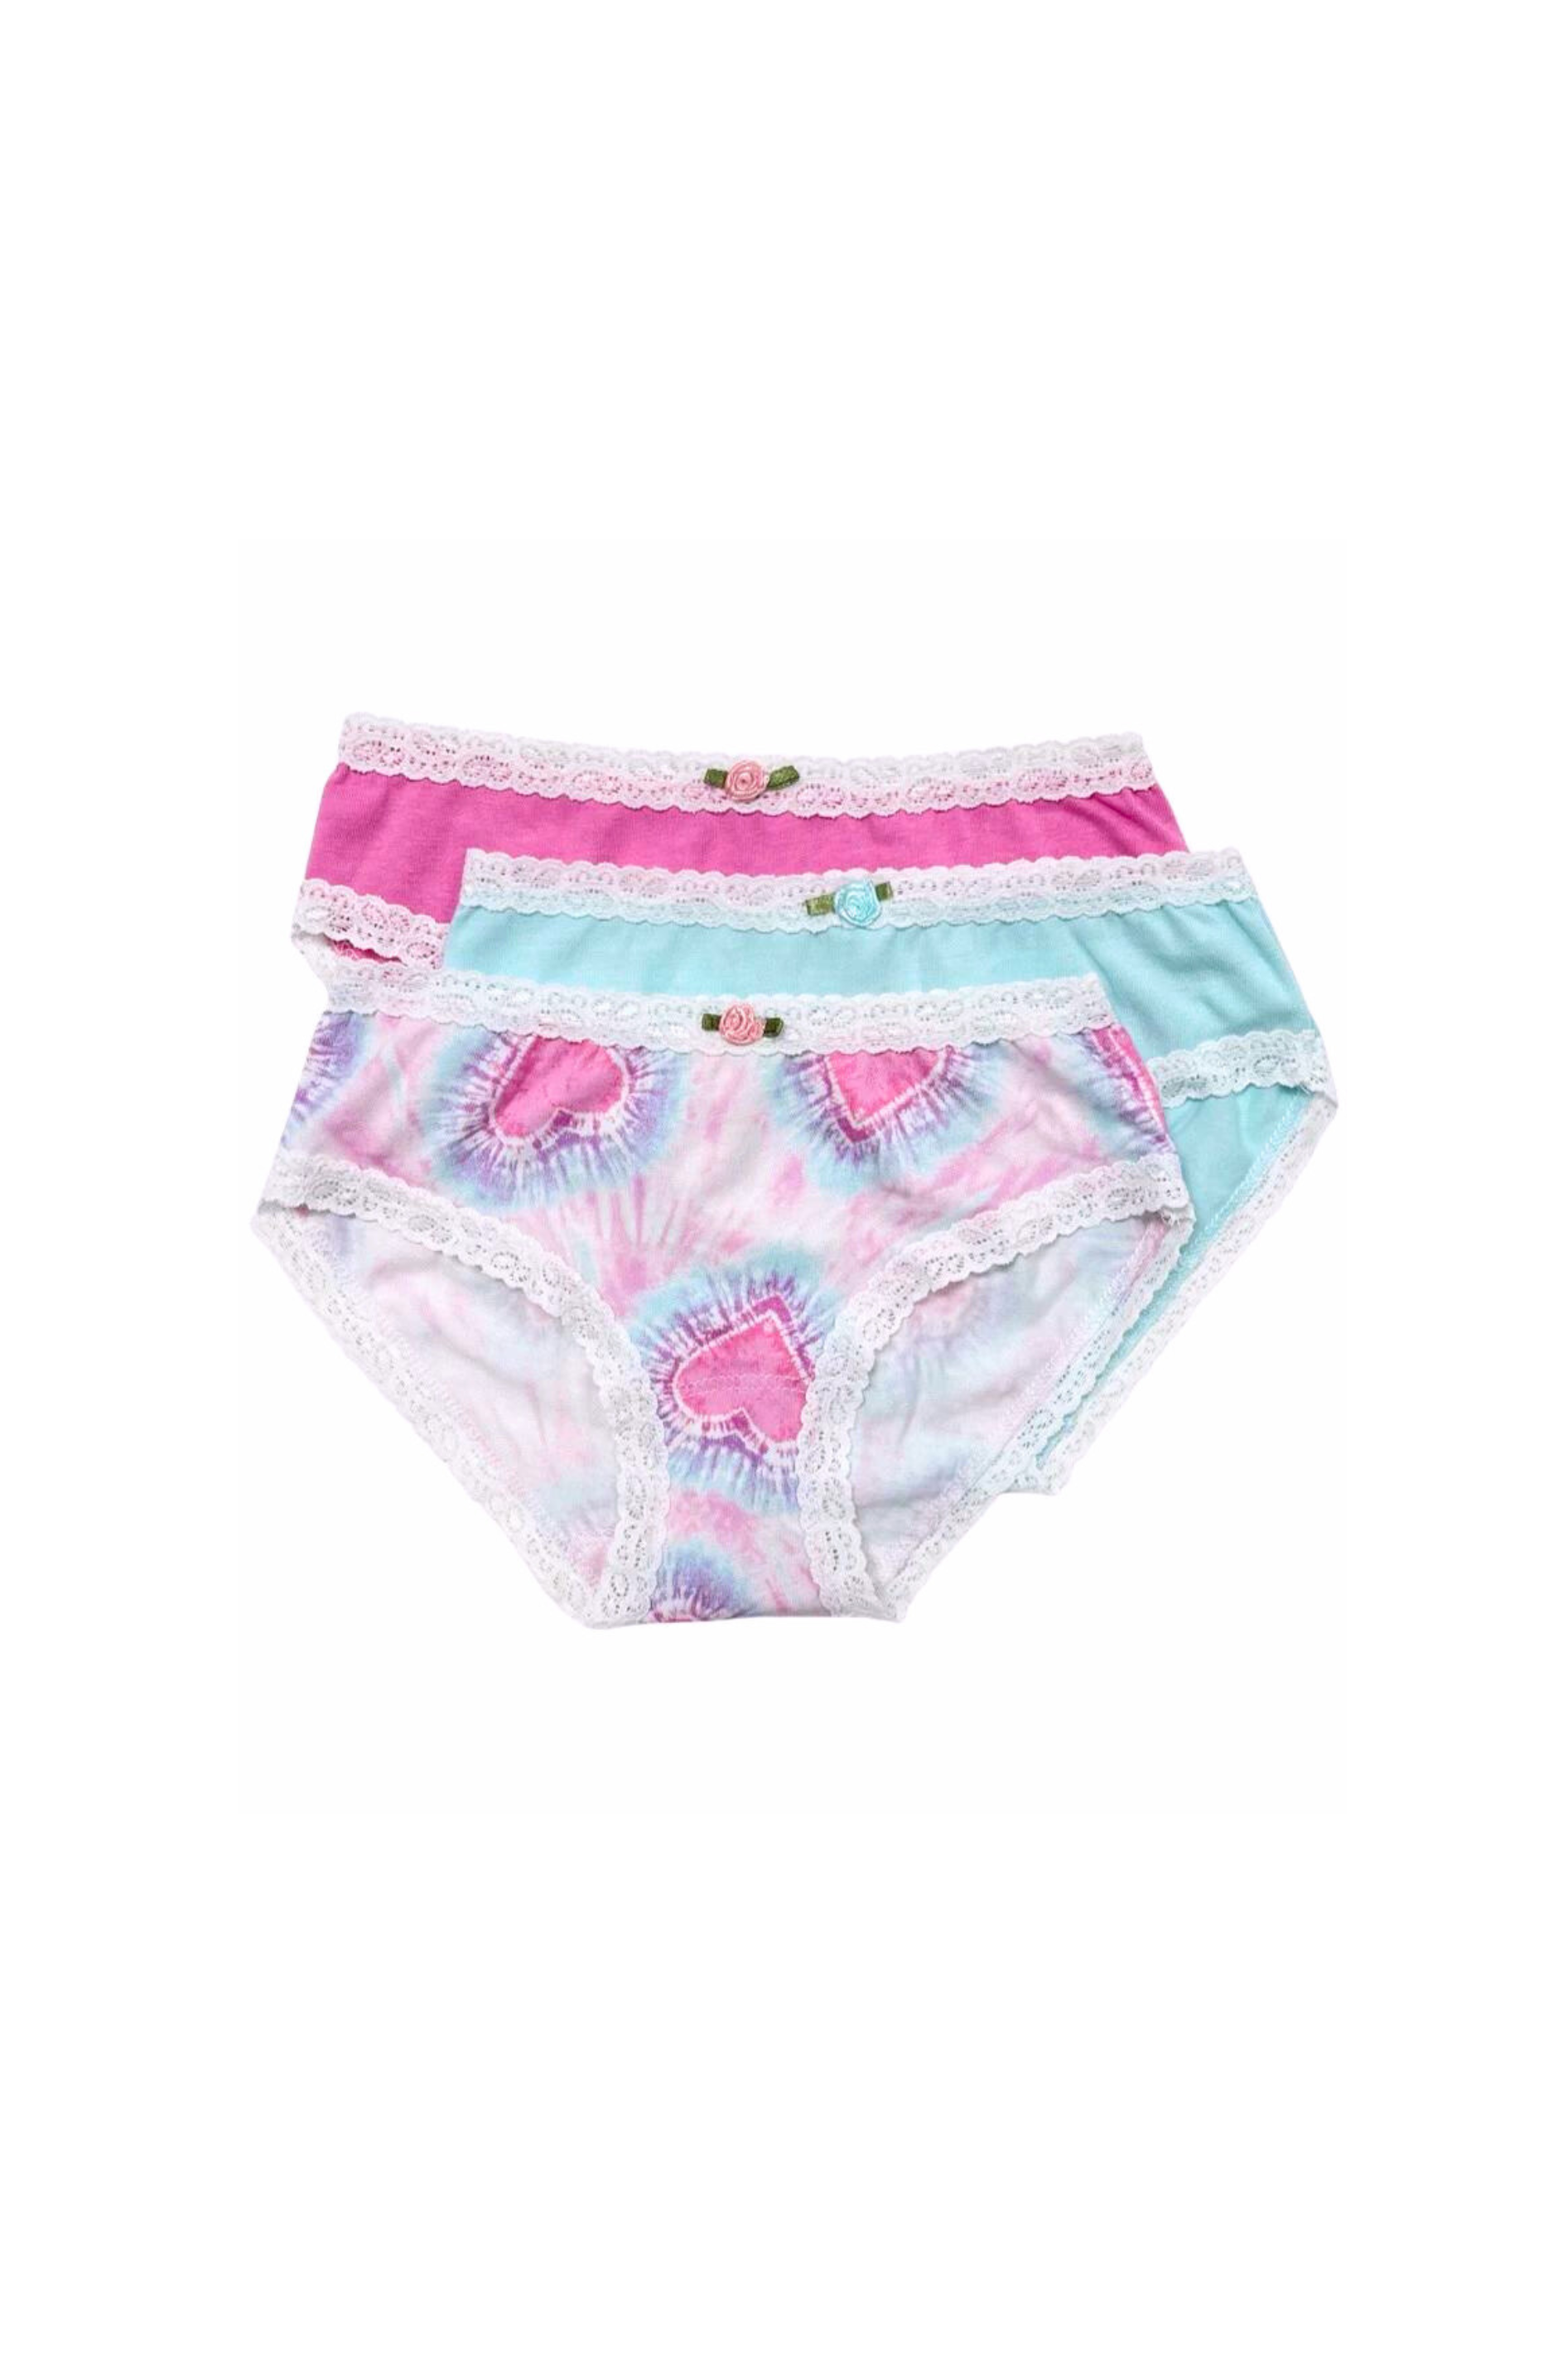 Esme - Hearts Panty Set (3 Pack) 7-16 Girls Underwear – Dottie Doolittle